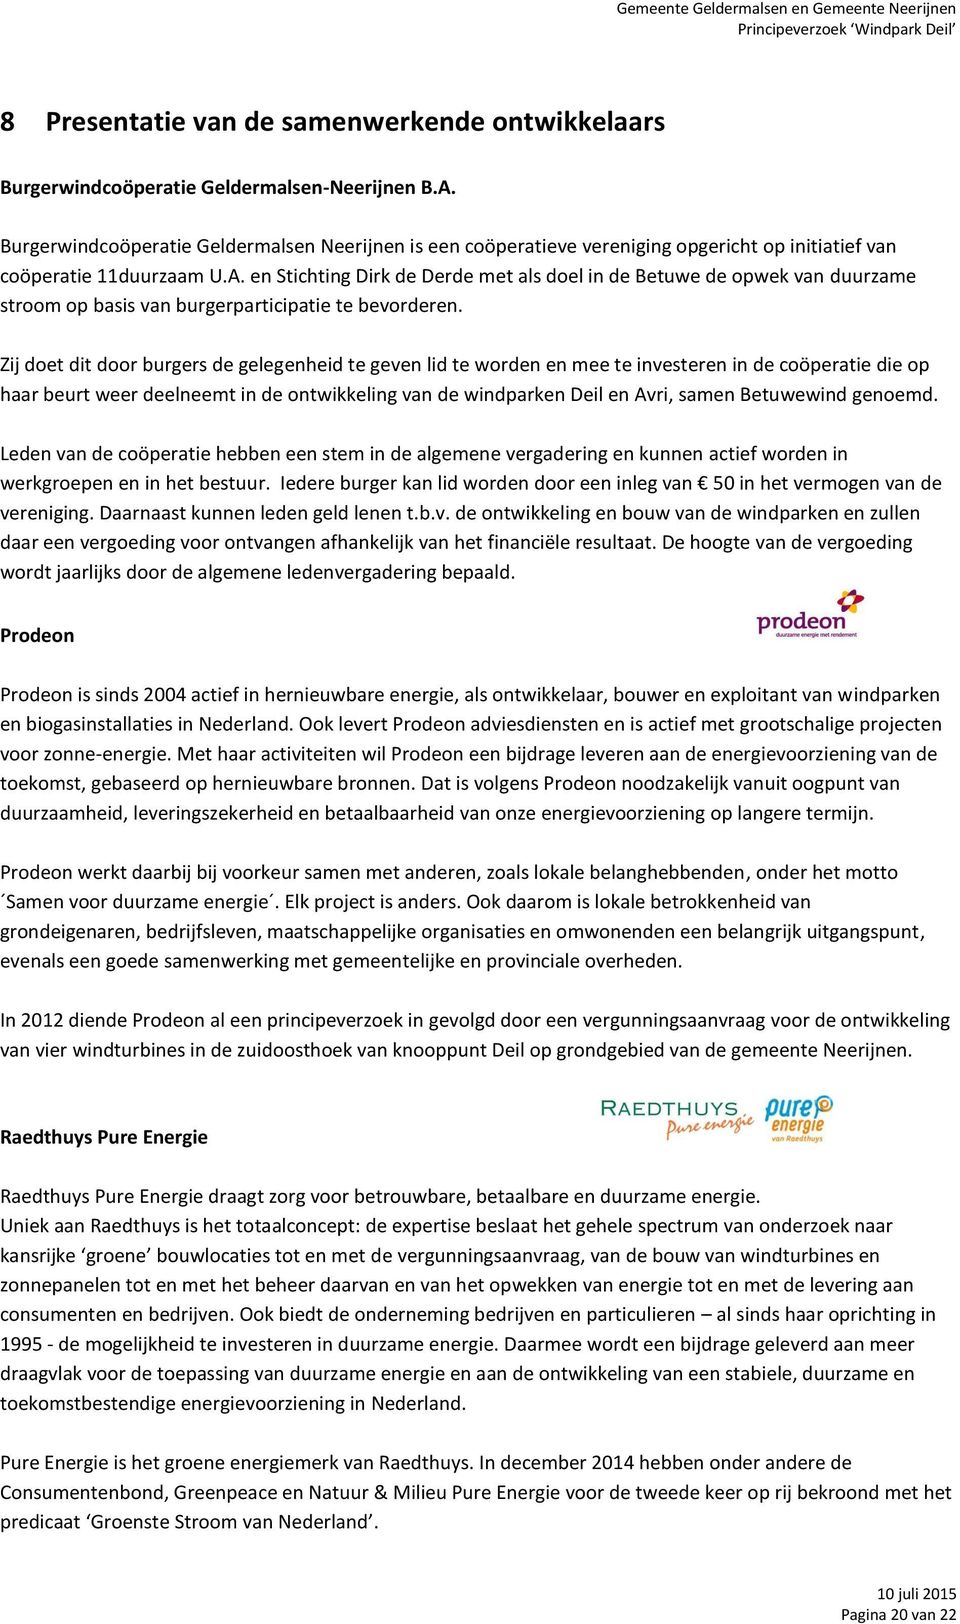 en Stichting Dirk de Derde met als doel in de Betuwe de opwek van duurzame stroom op basis van burgerparticipatie te bevorderen.